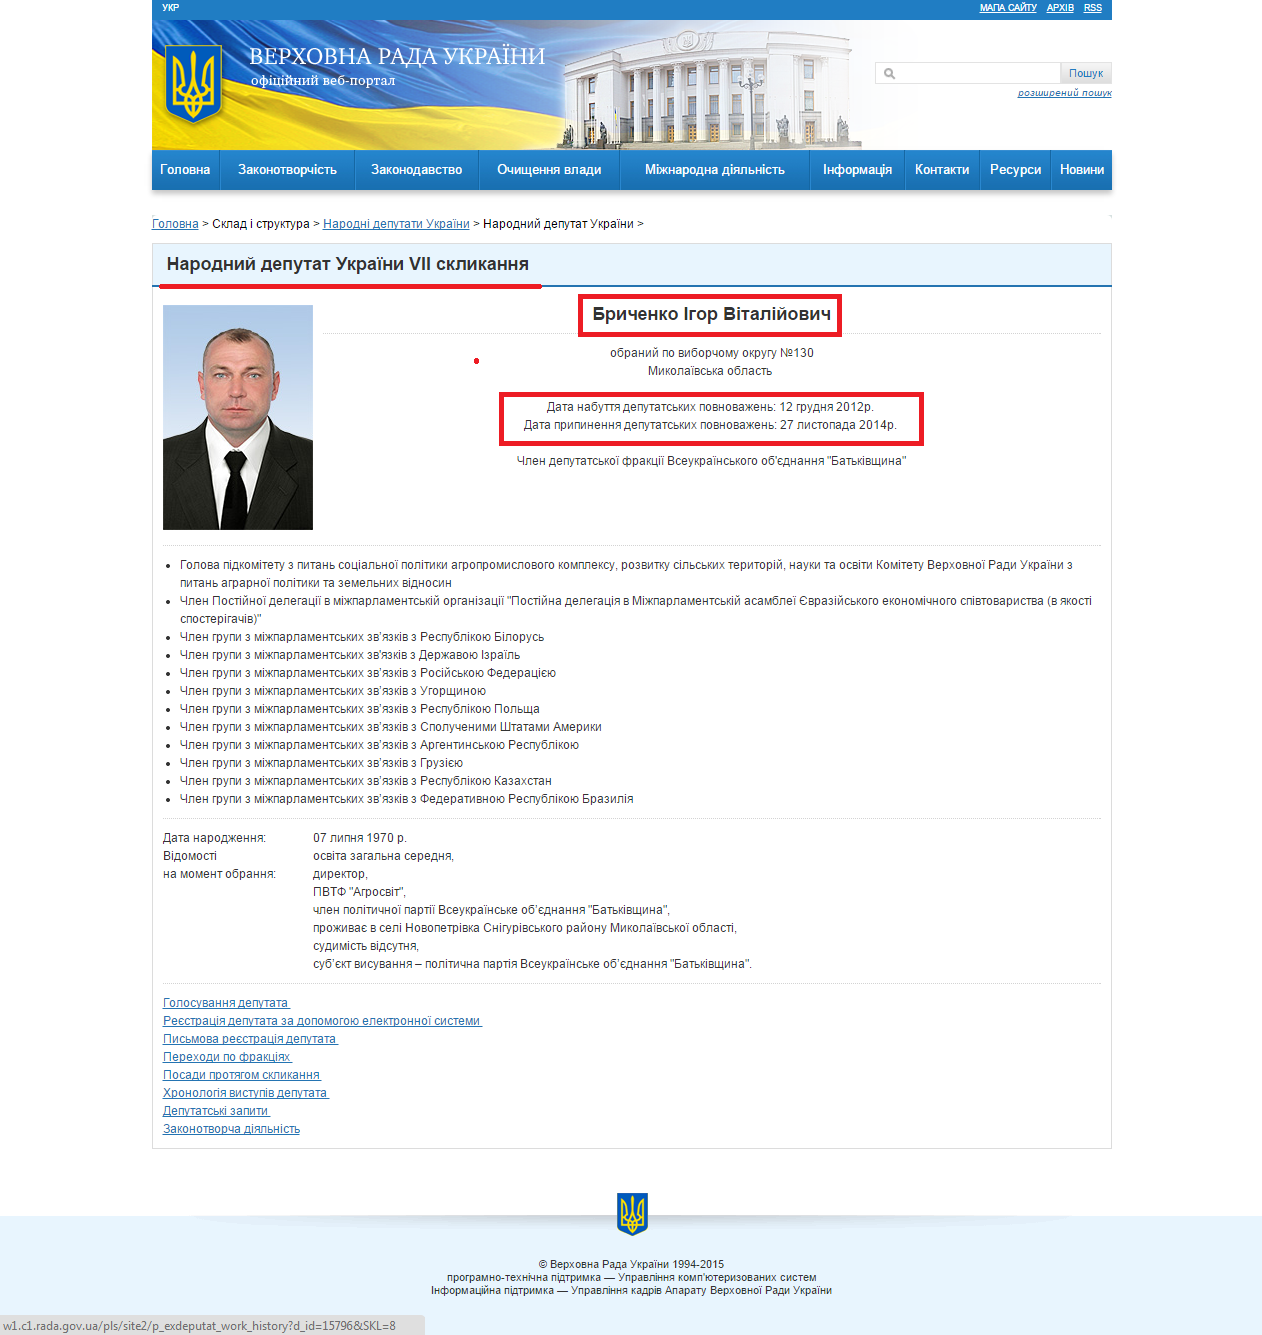 http://itd.rada.gov.ua/mps/info/expage/15796/8